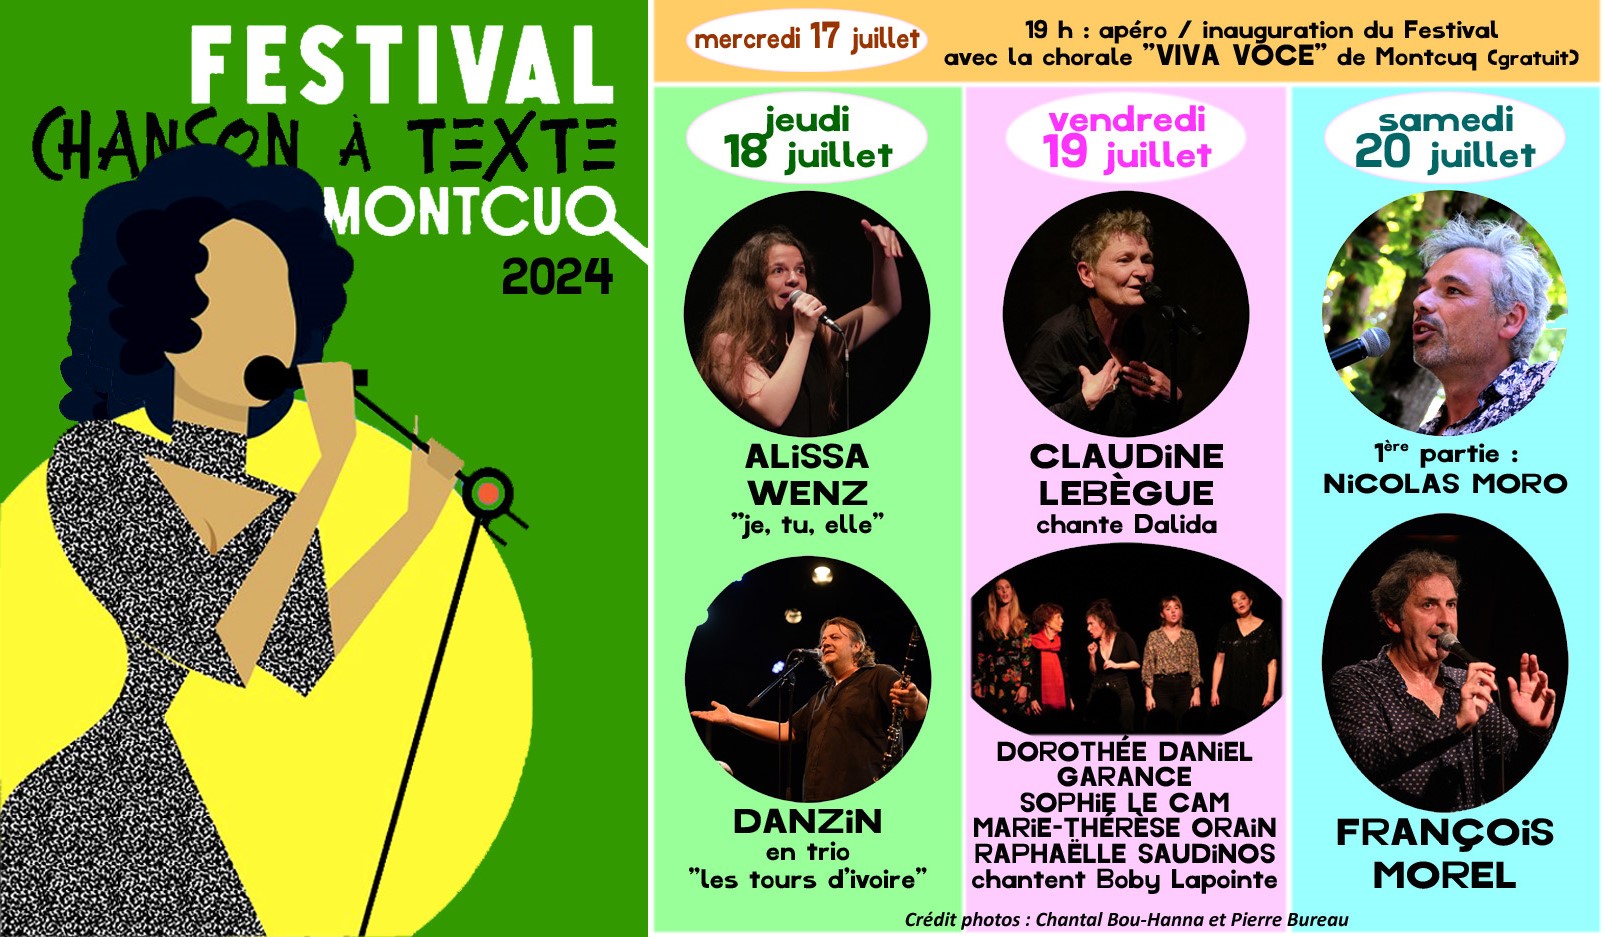 Figeac : Festival de la Chanson à Texte de Montcuq : Alissa Wenz 